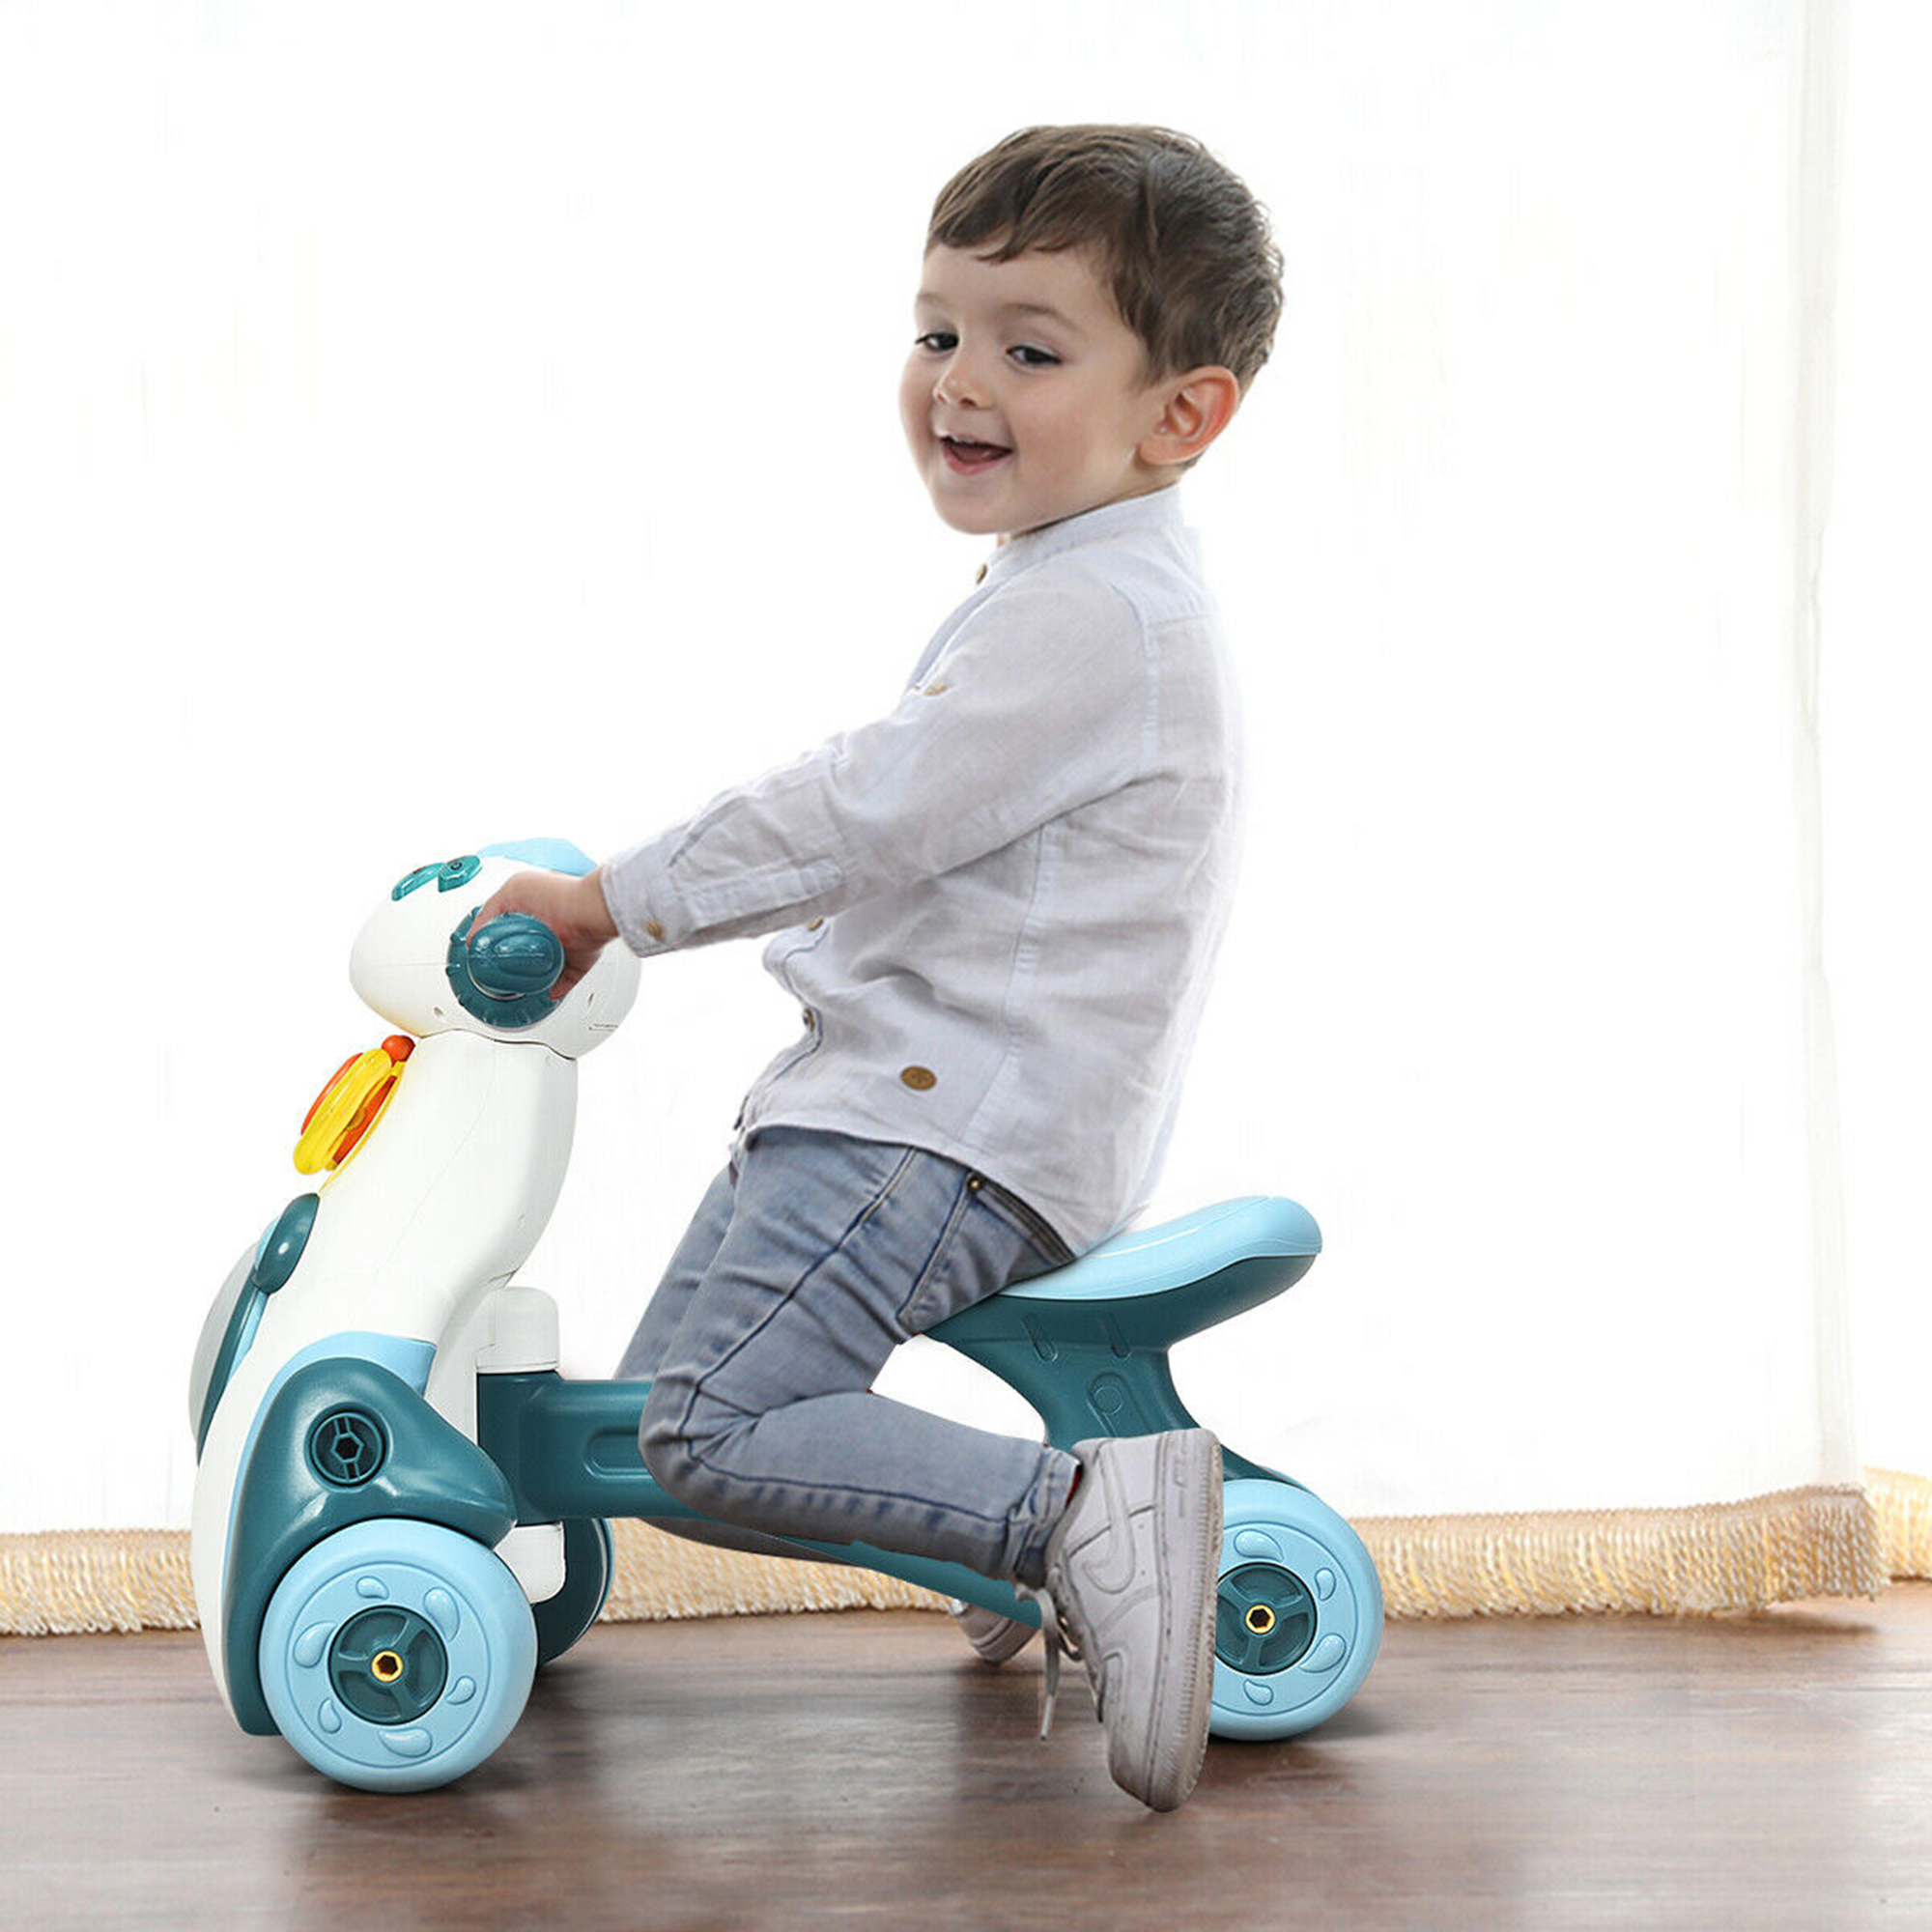 Gymax Baby Balance Bike Musical Ride Toy w/ Light & Sensing Function Toddler Walker - image 3 of 10